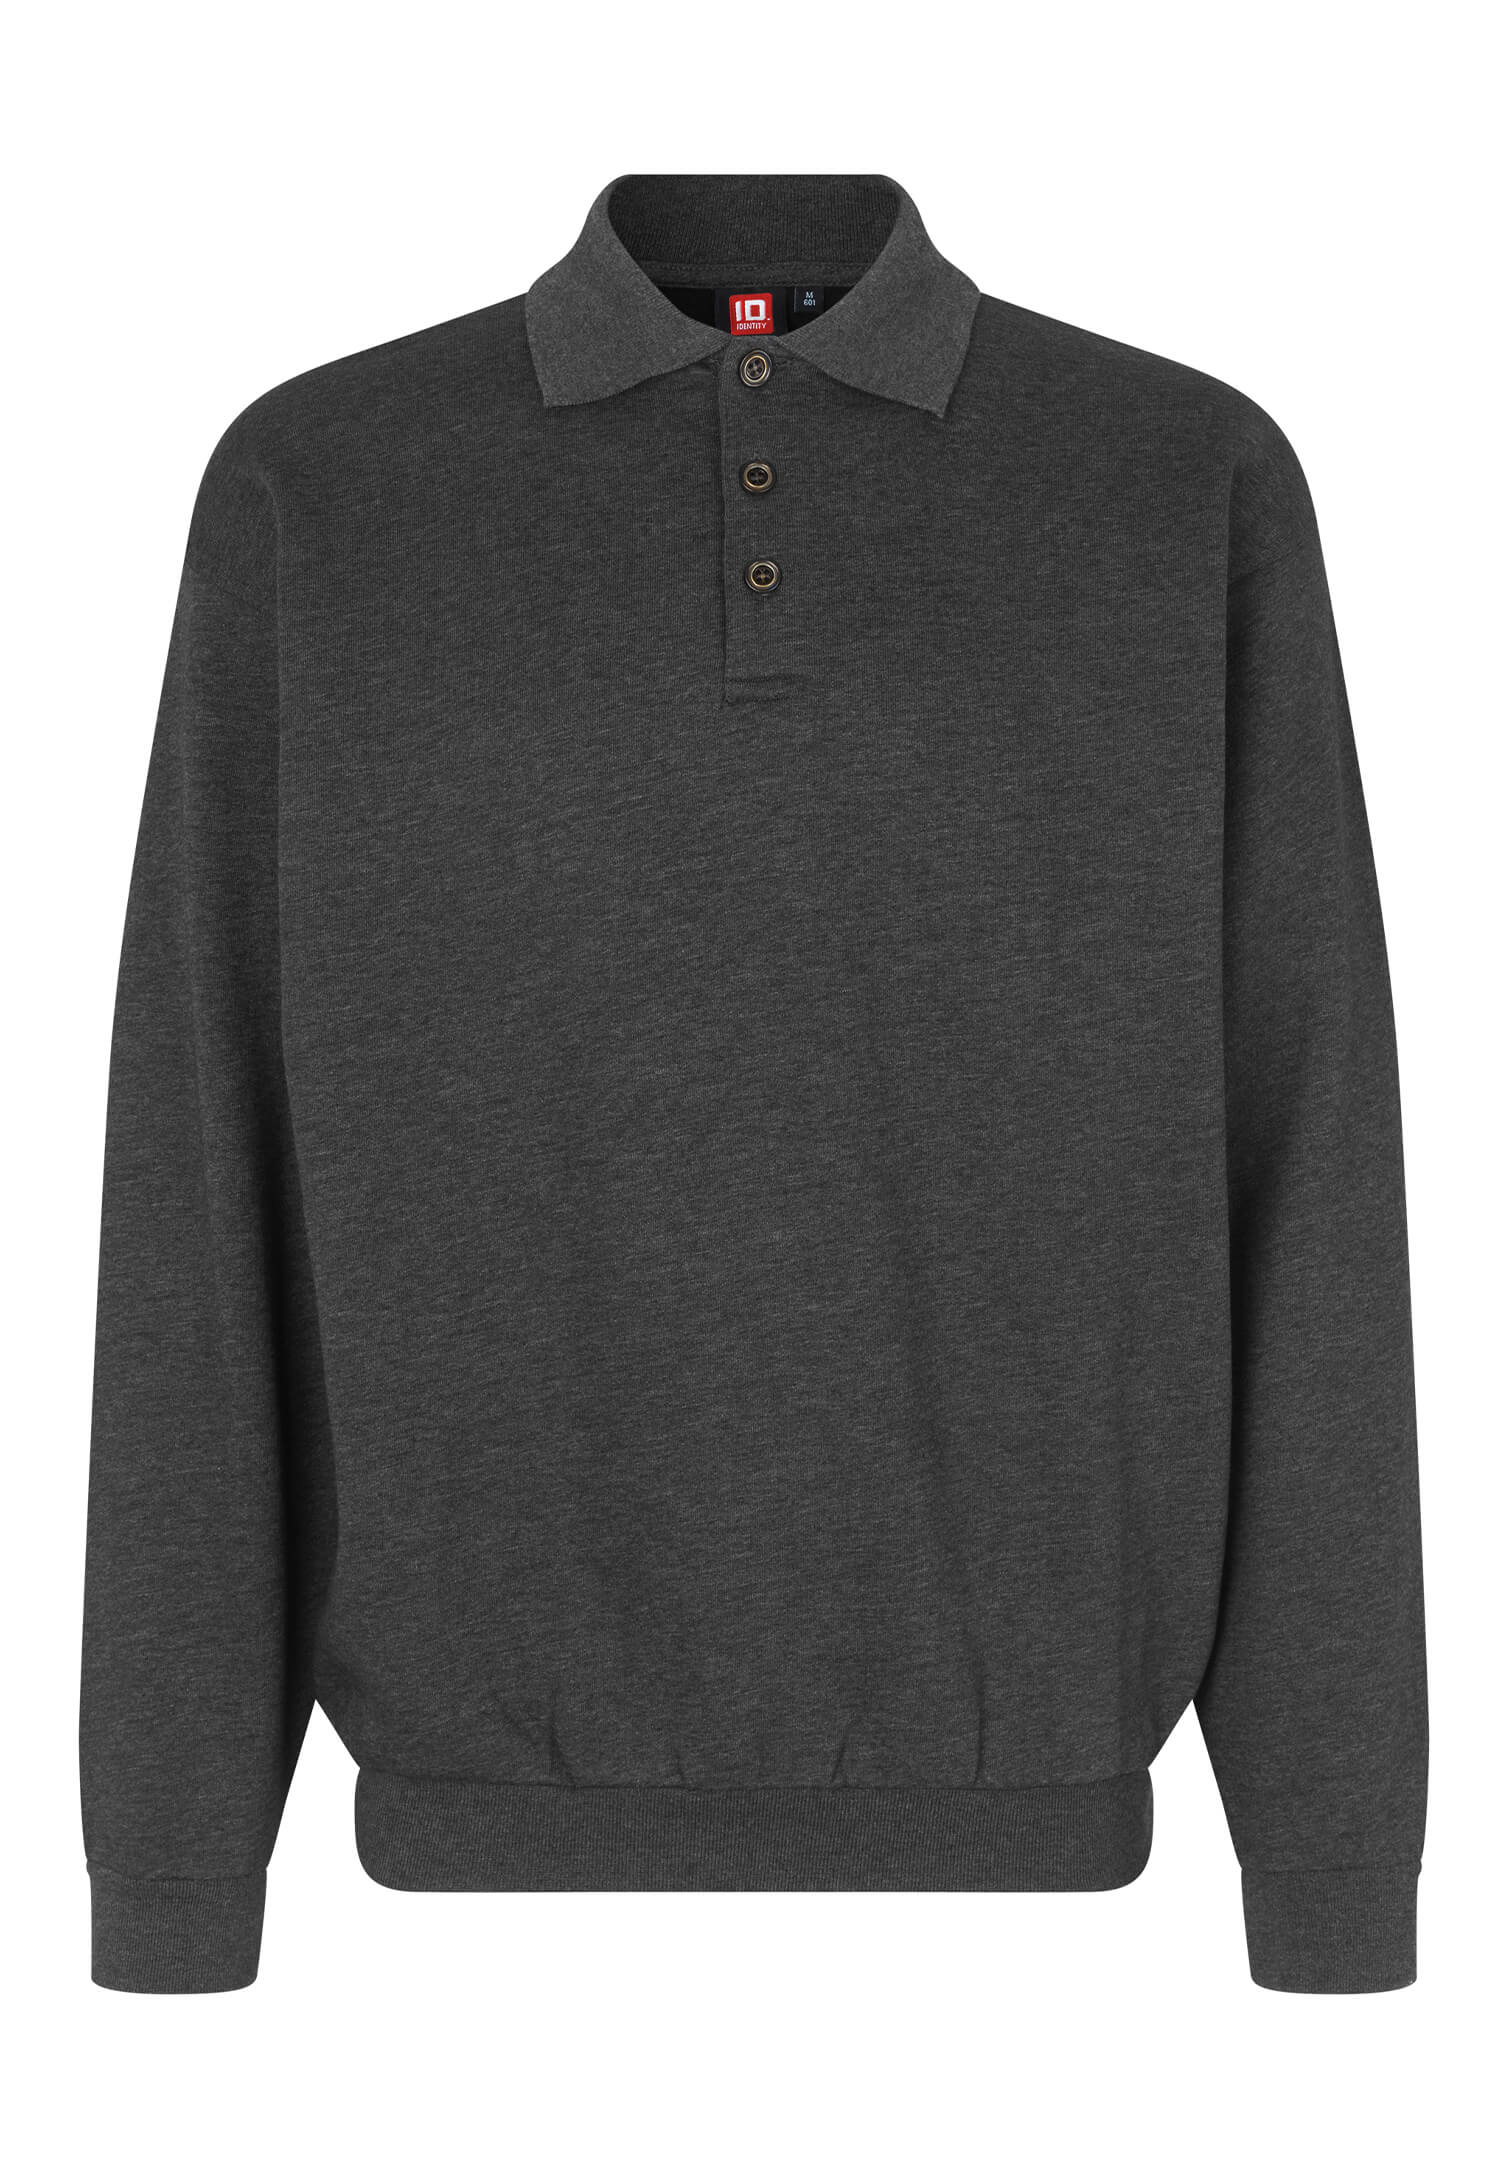 Herren Polo-Sweatshirt Comfort Fit - 2XL - anthrazit meliert